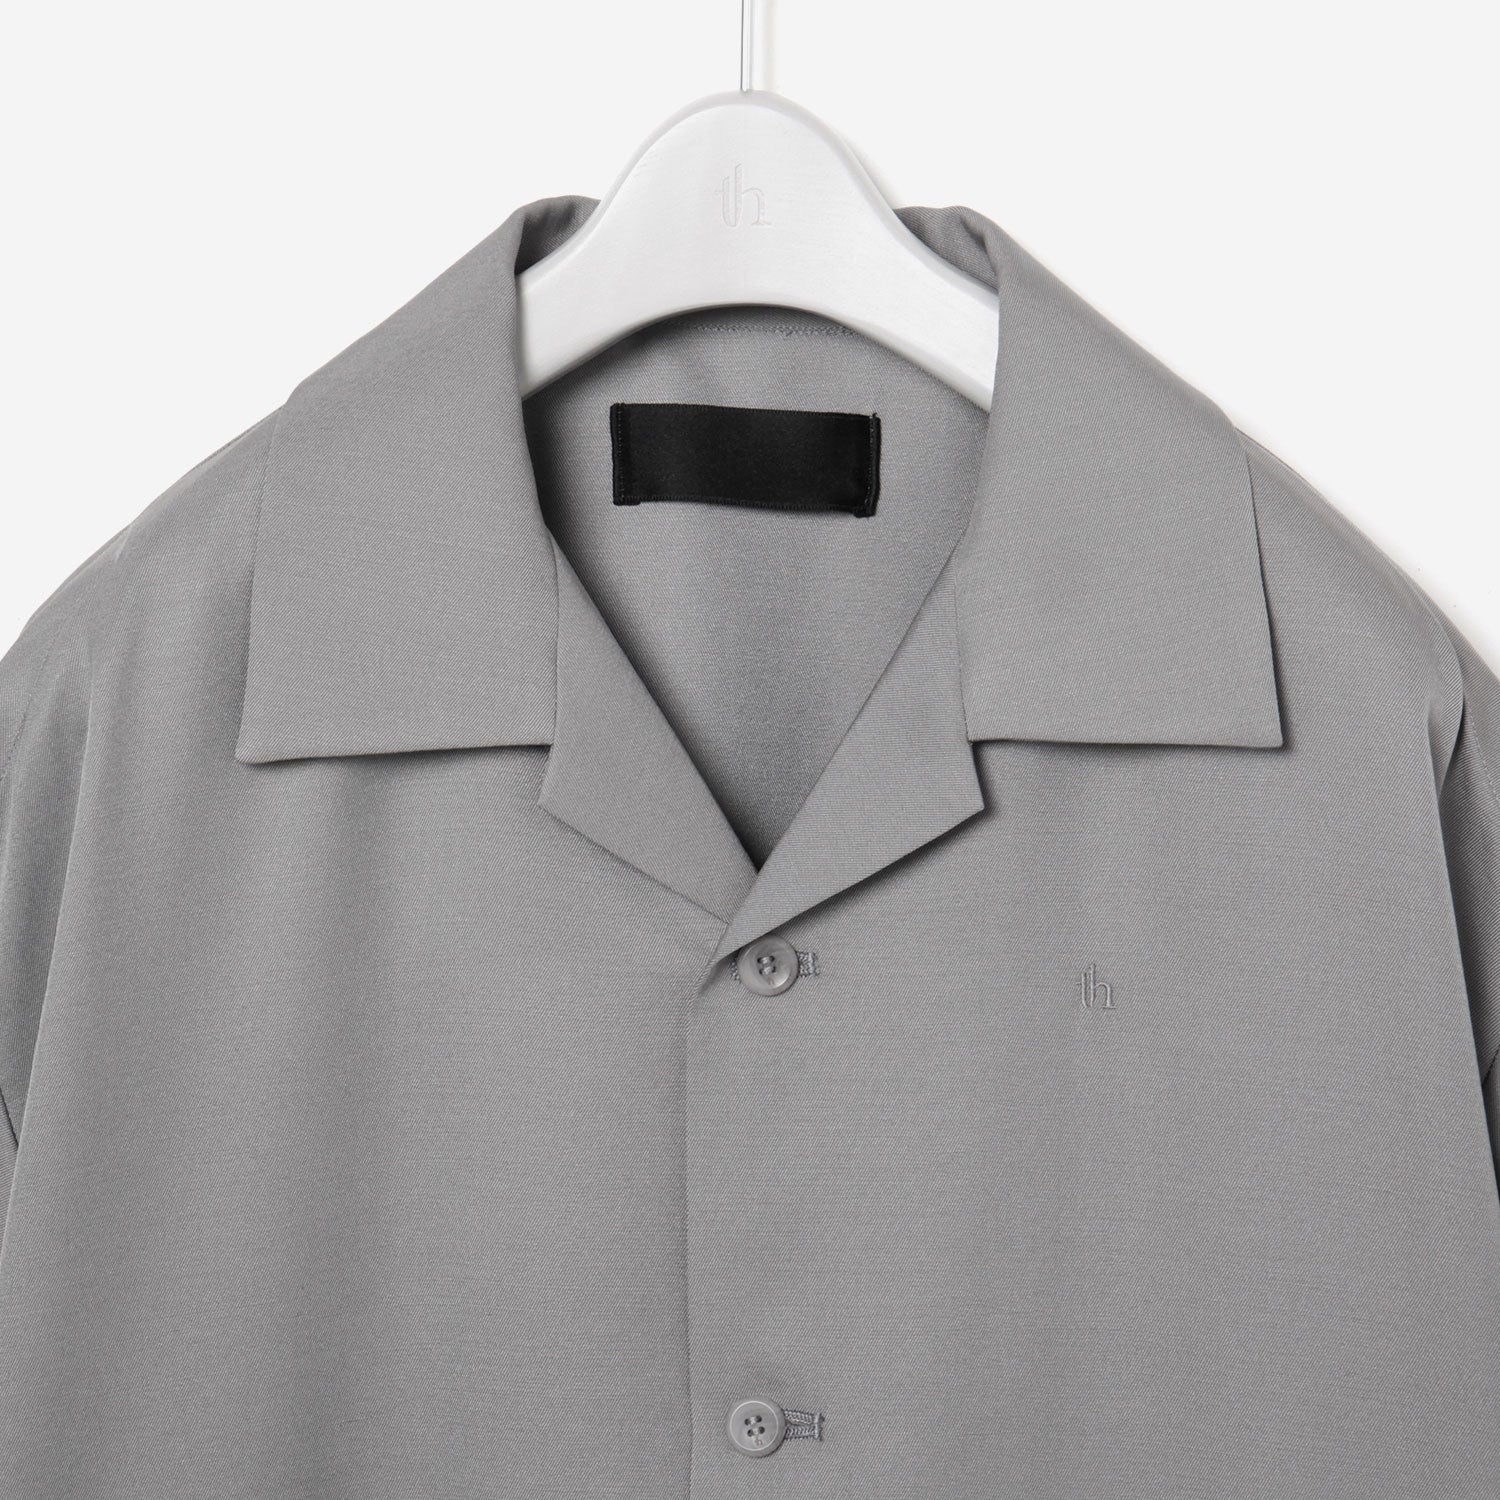 Open collar Shirt / gray